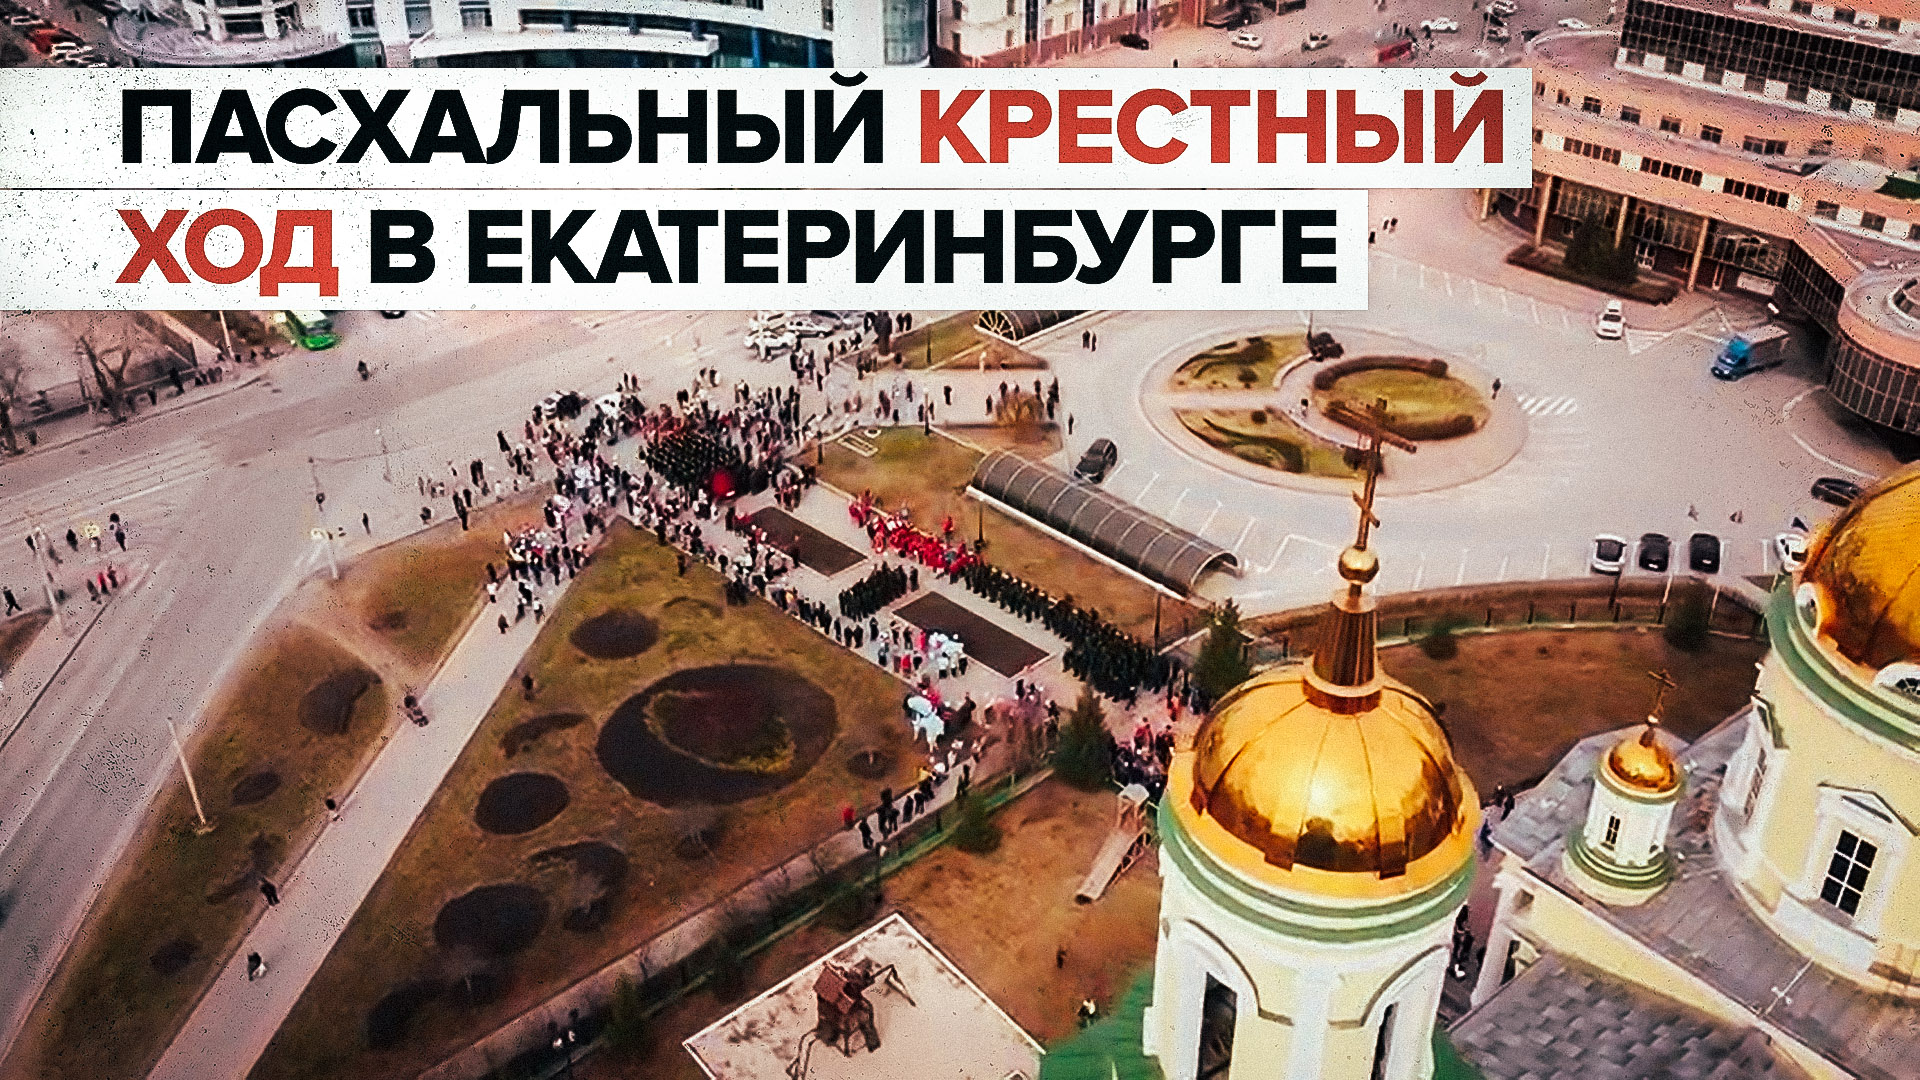 Пасхальный крестный ход в Екатеринбурге — видео